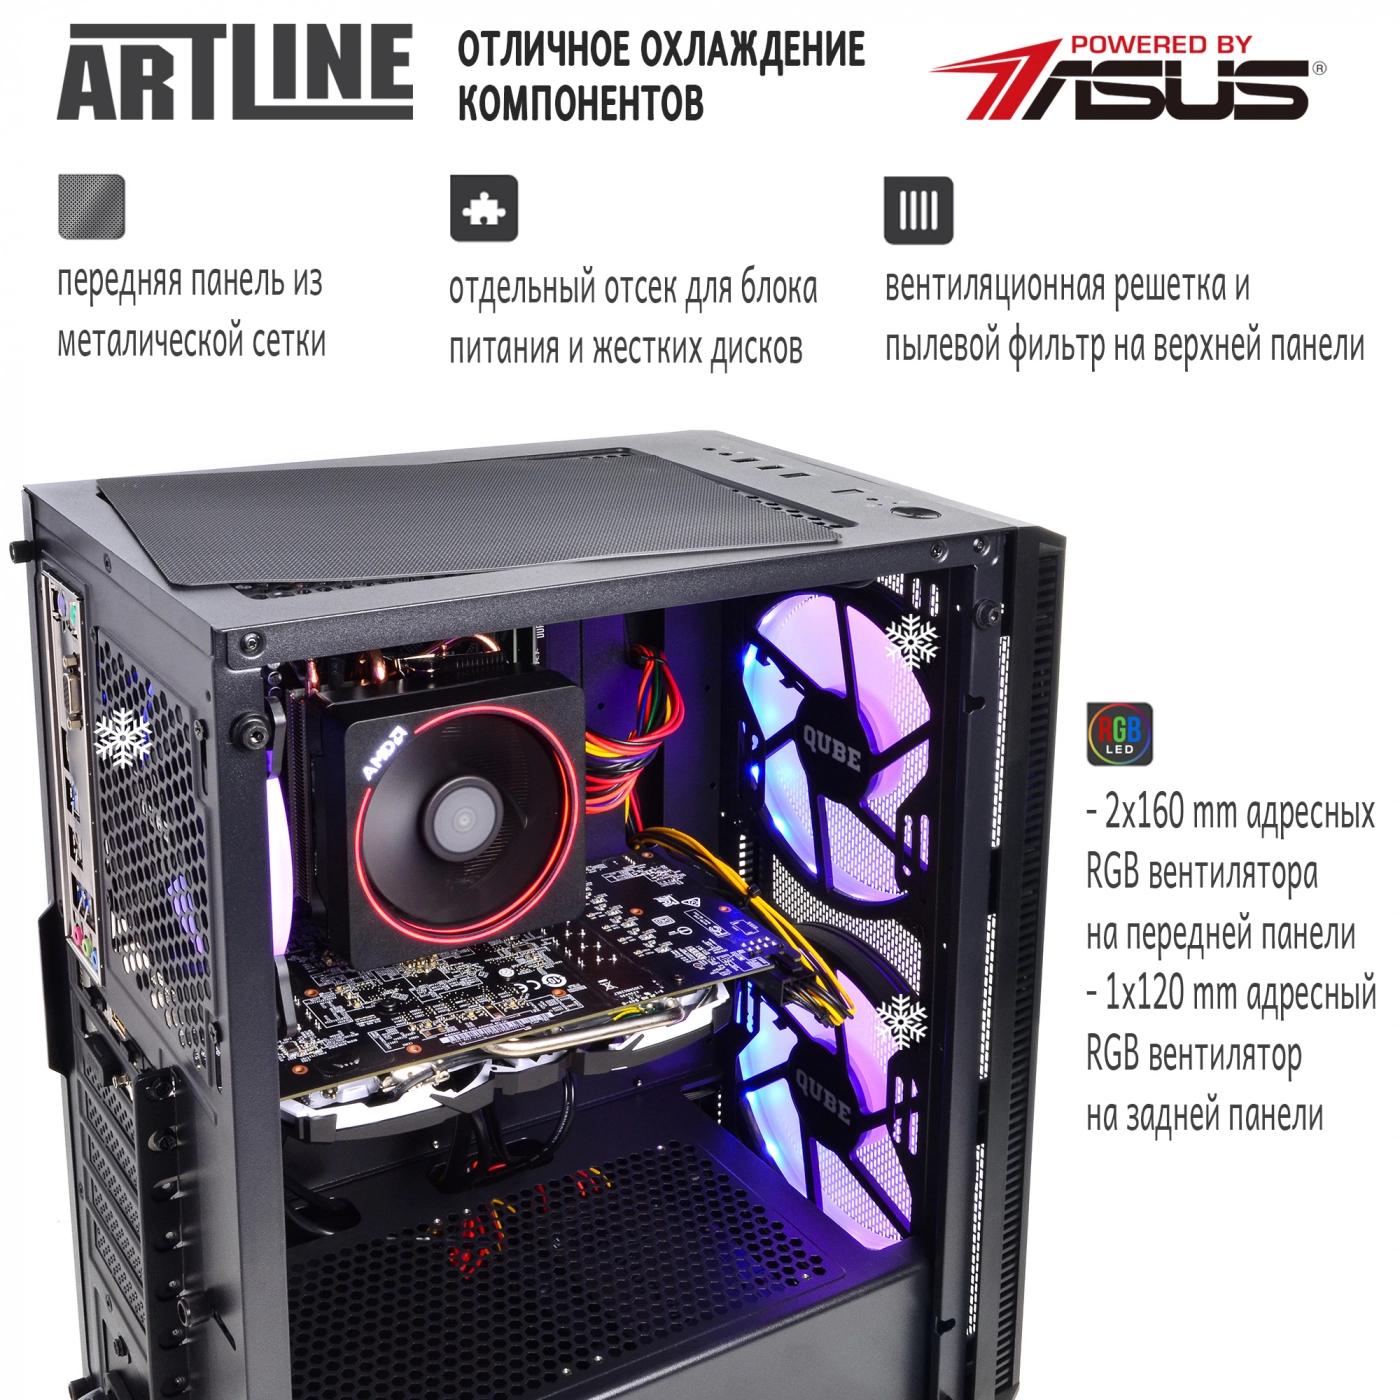 Купить Компьютер ARTLINE Gaming X63v14 - фото 2